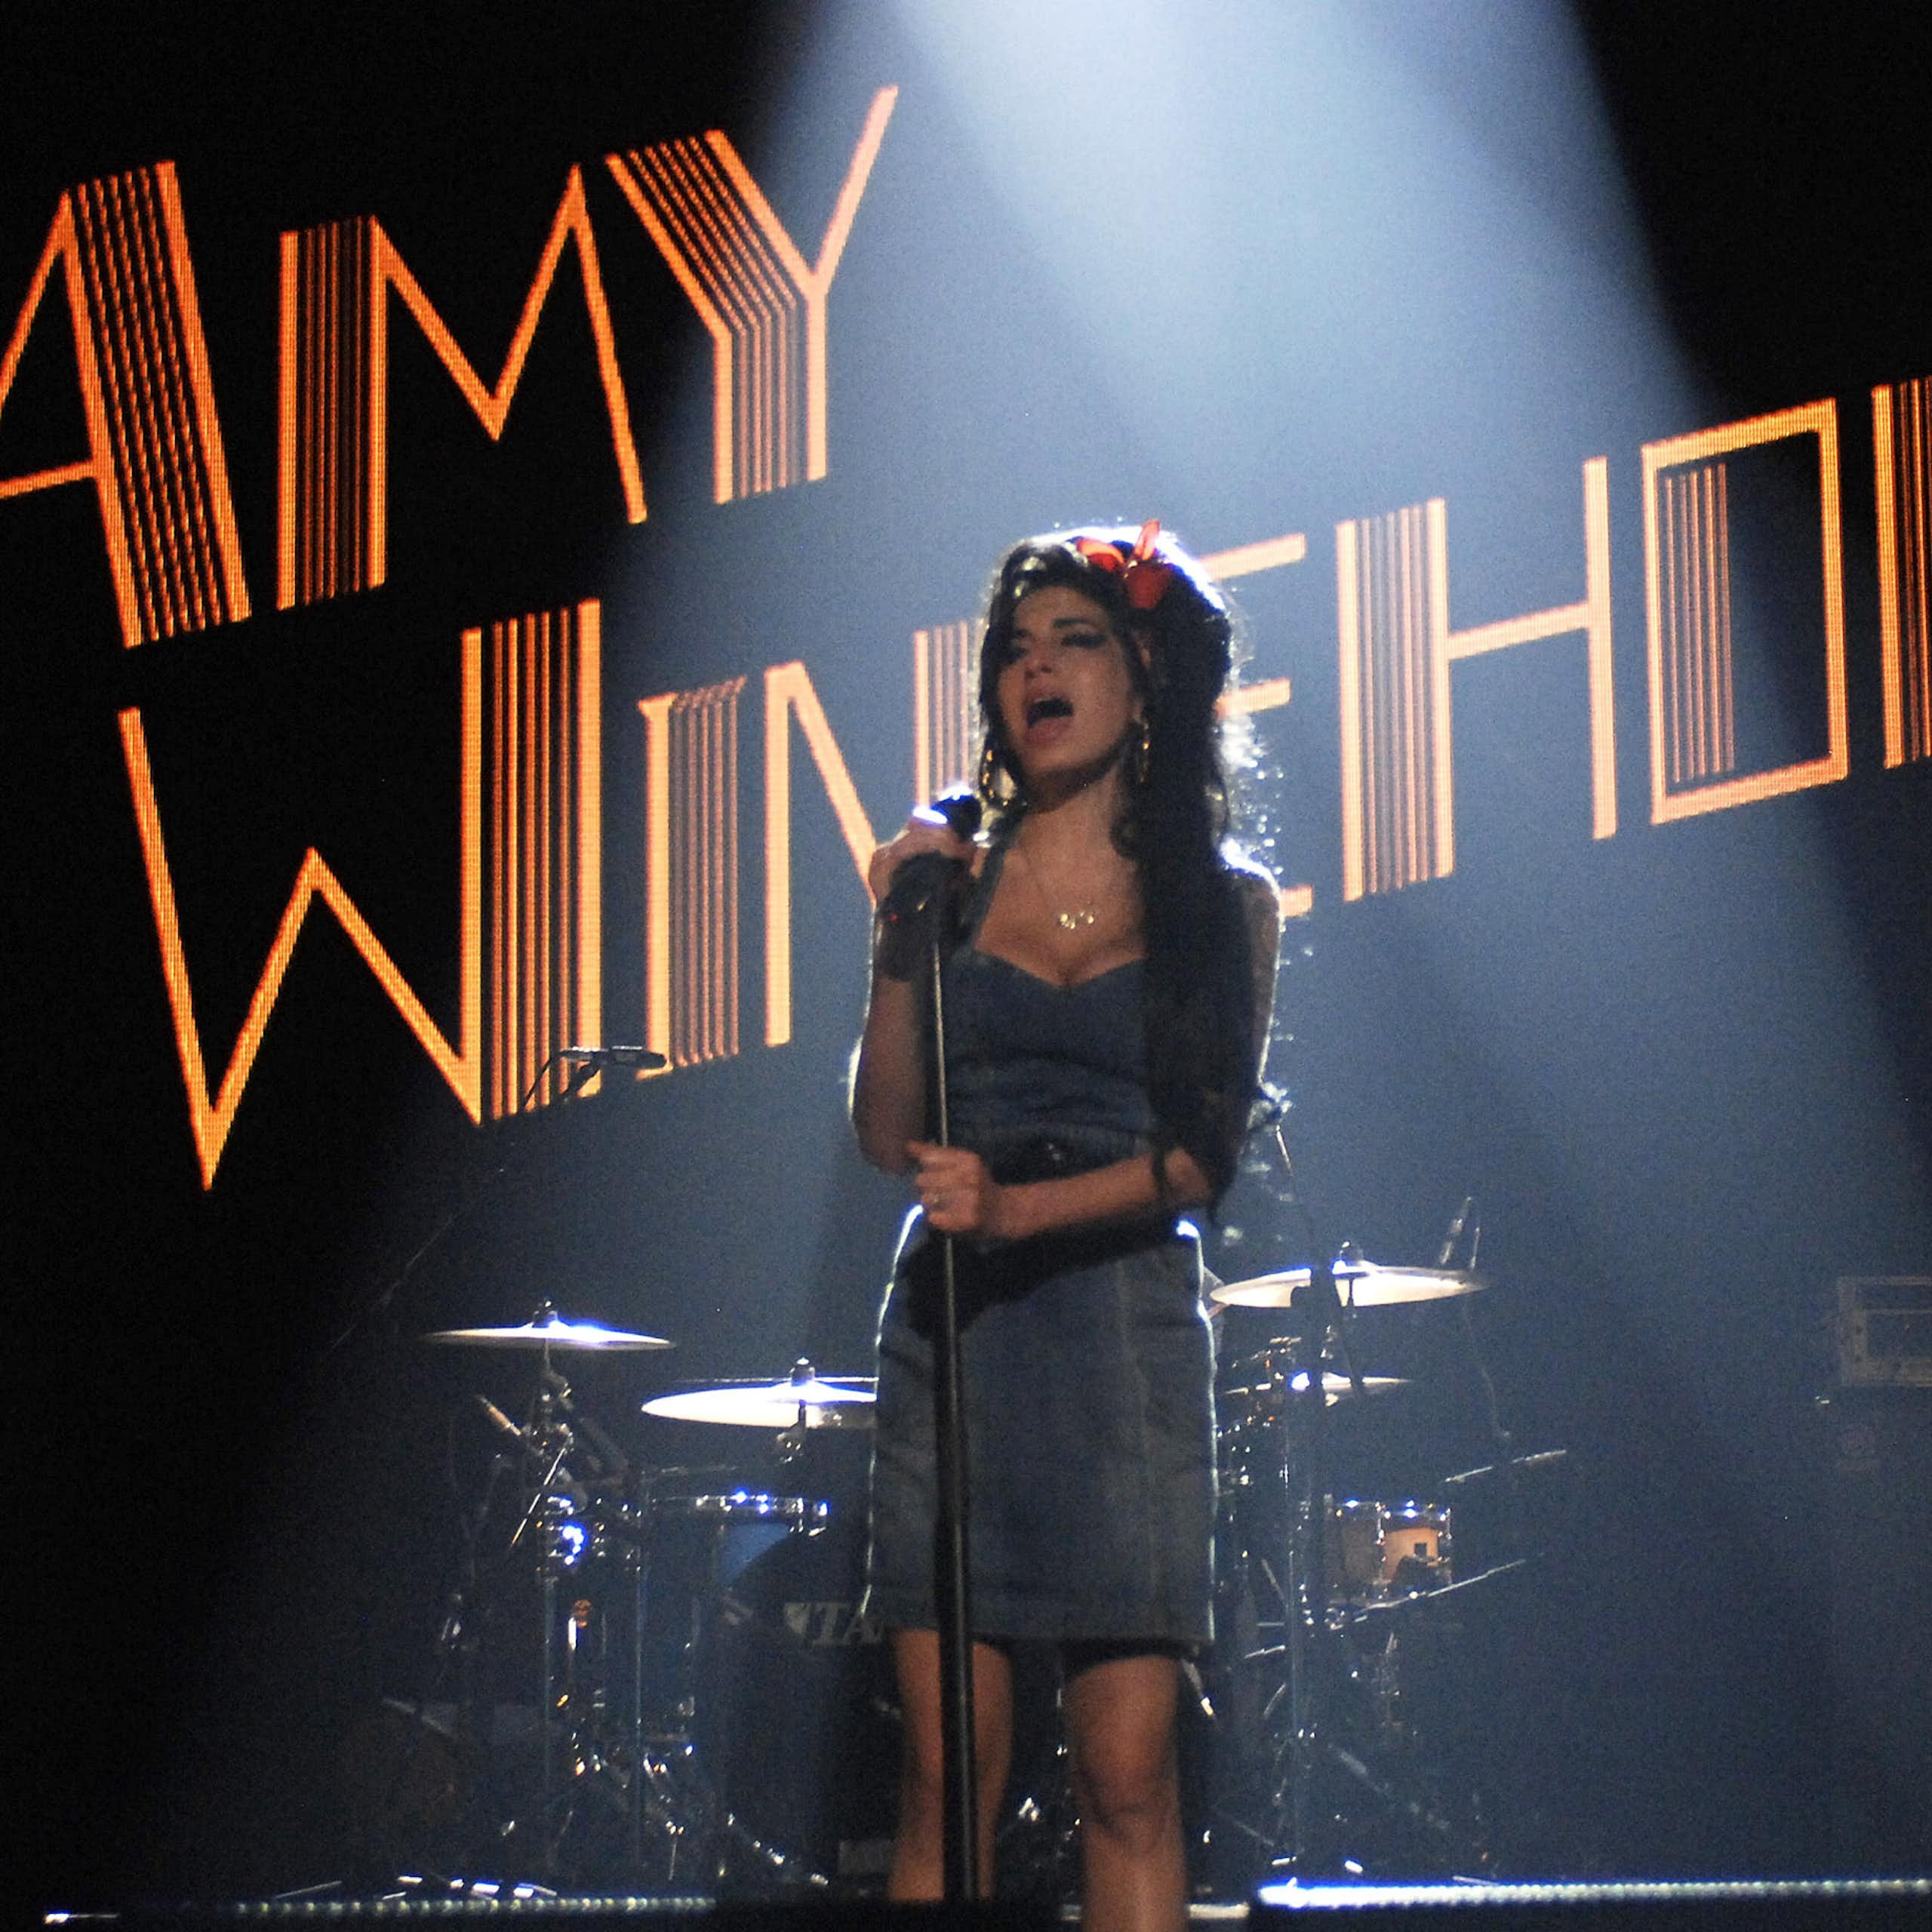 A falecida cantora Amy Winehouse, cujo nome é exibido em luzes, se apresenta em um palco com instrumentos musicais e um guitarrista atrás dela.